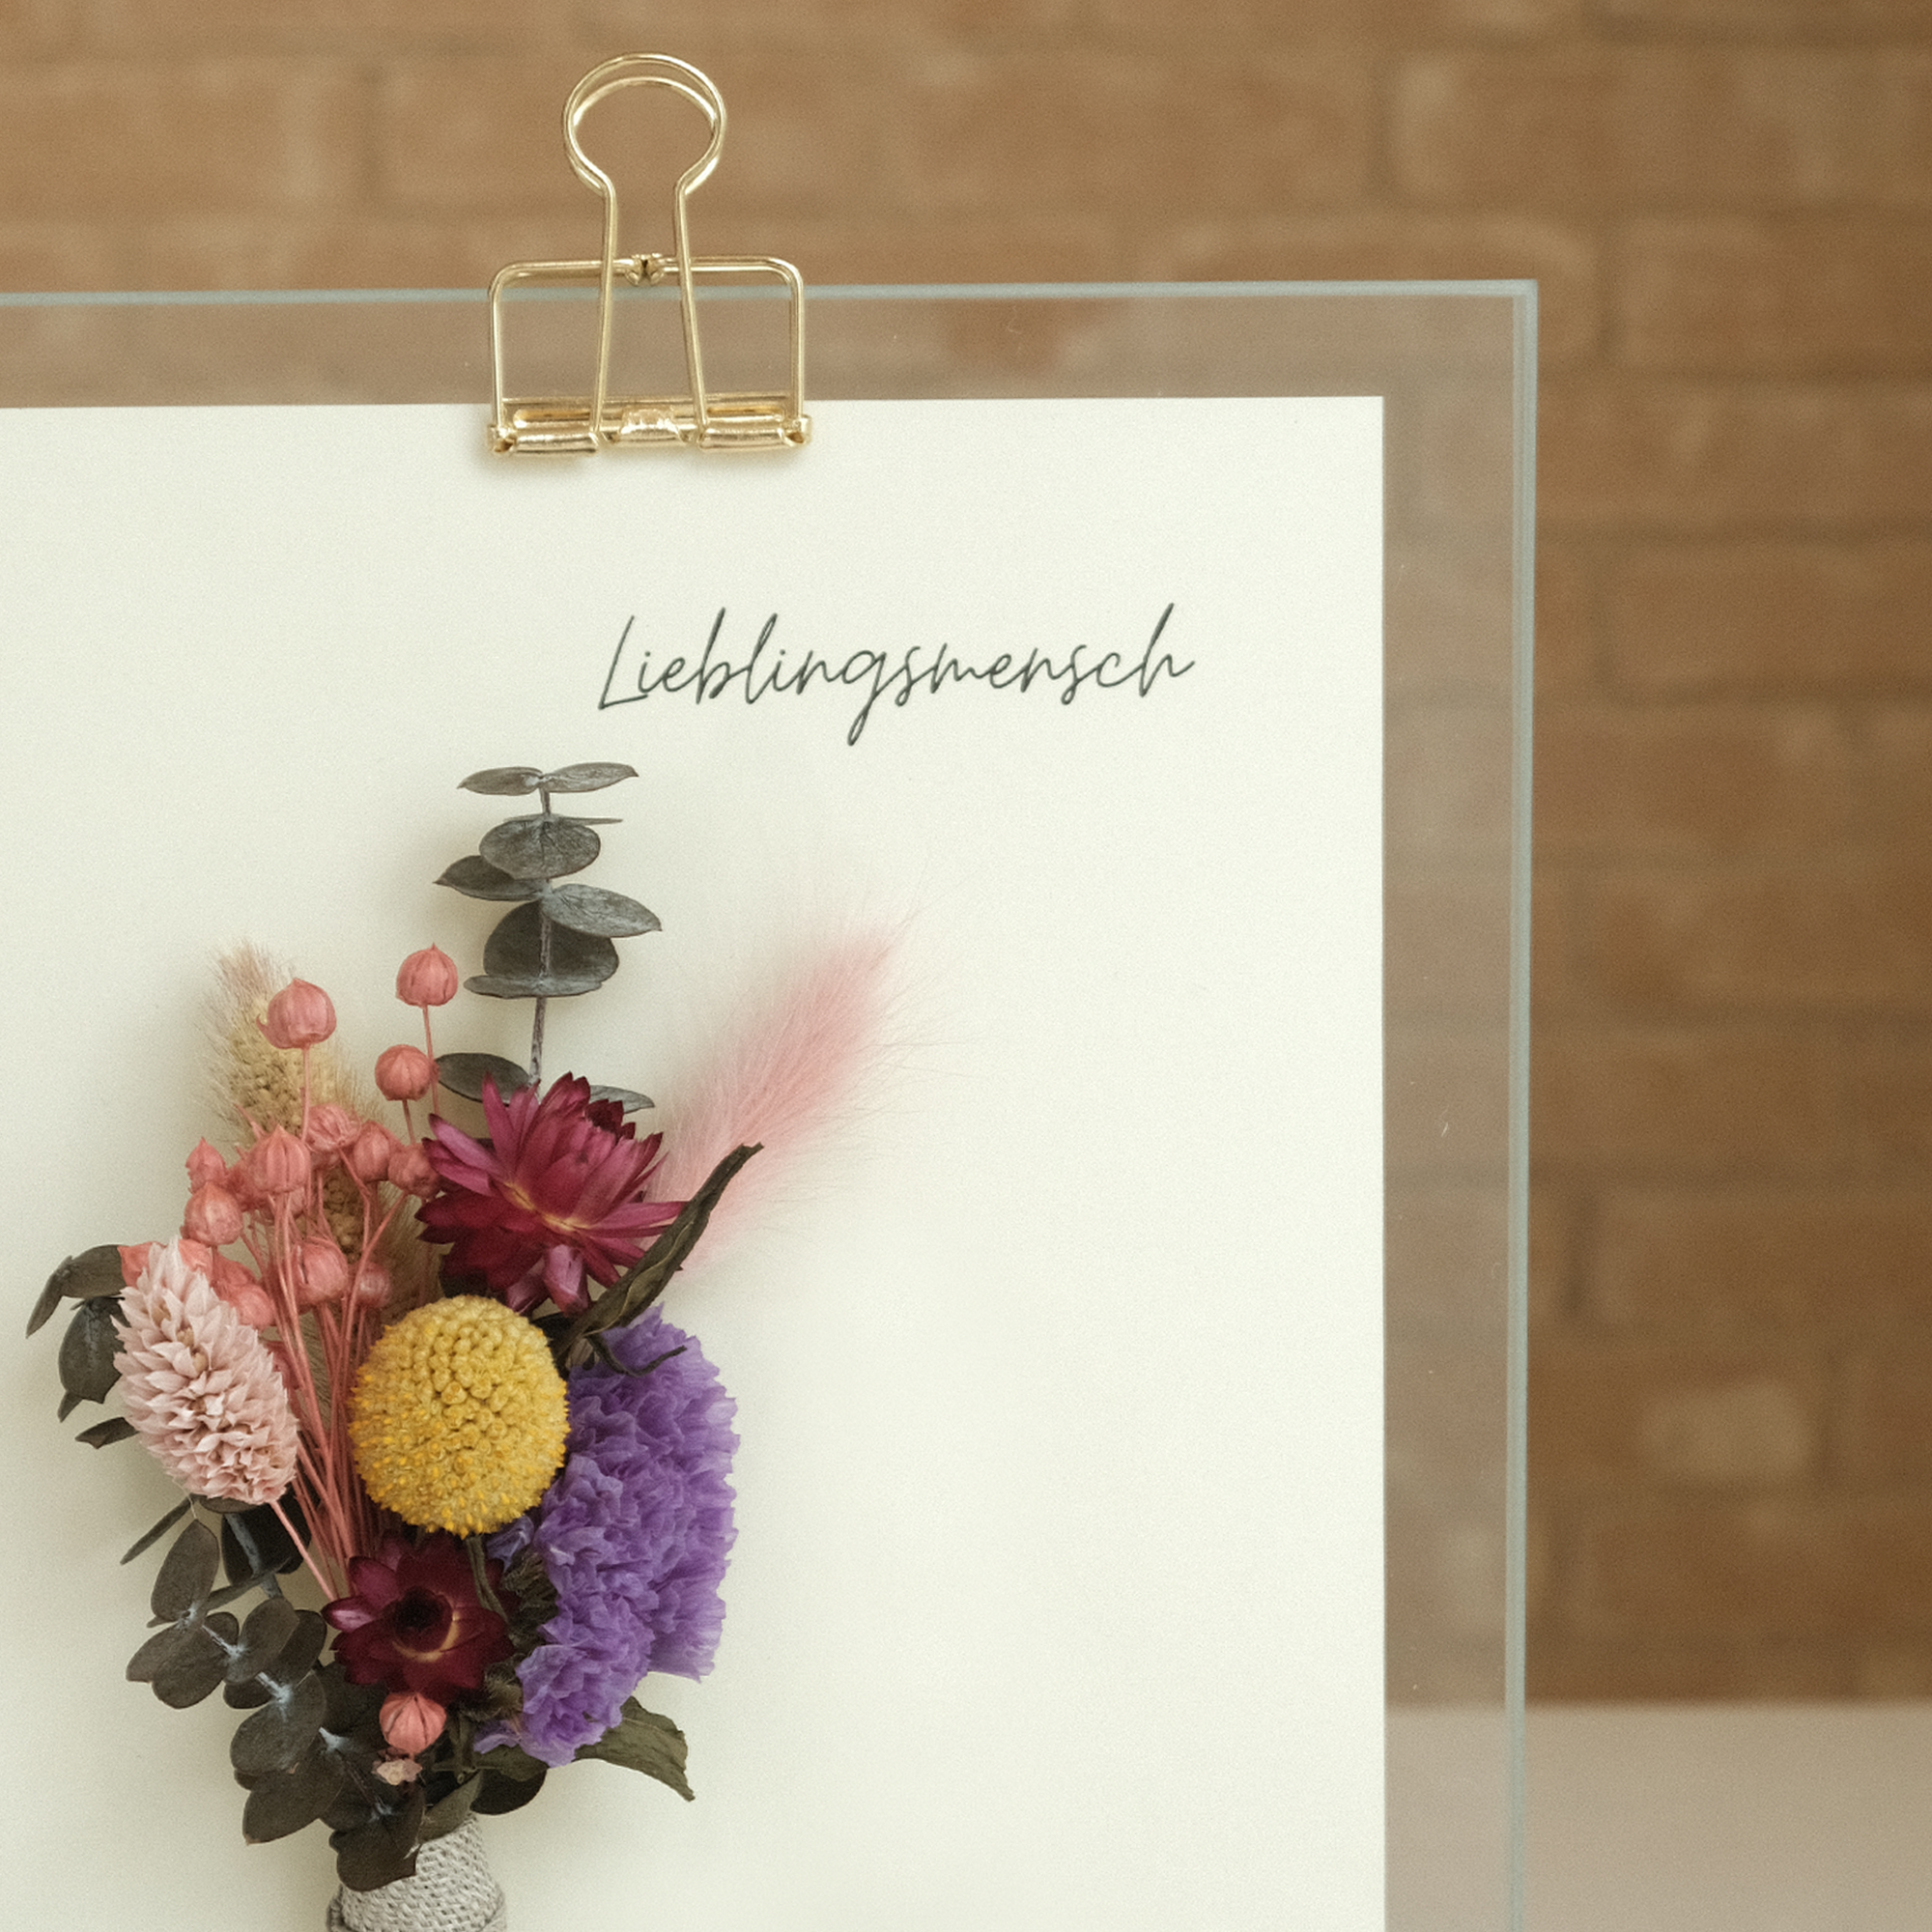 Detailansicht von einem Glasaufsteller mit der Aufschrift "Lieblingsmensch" und floraler Dekoration mit Trockenblumen.